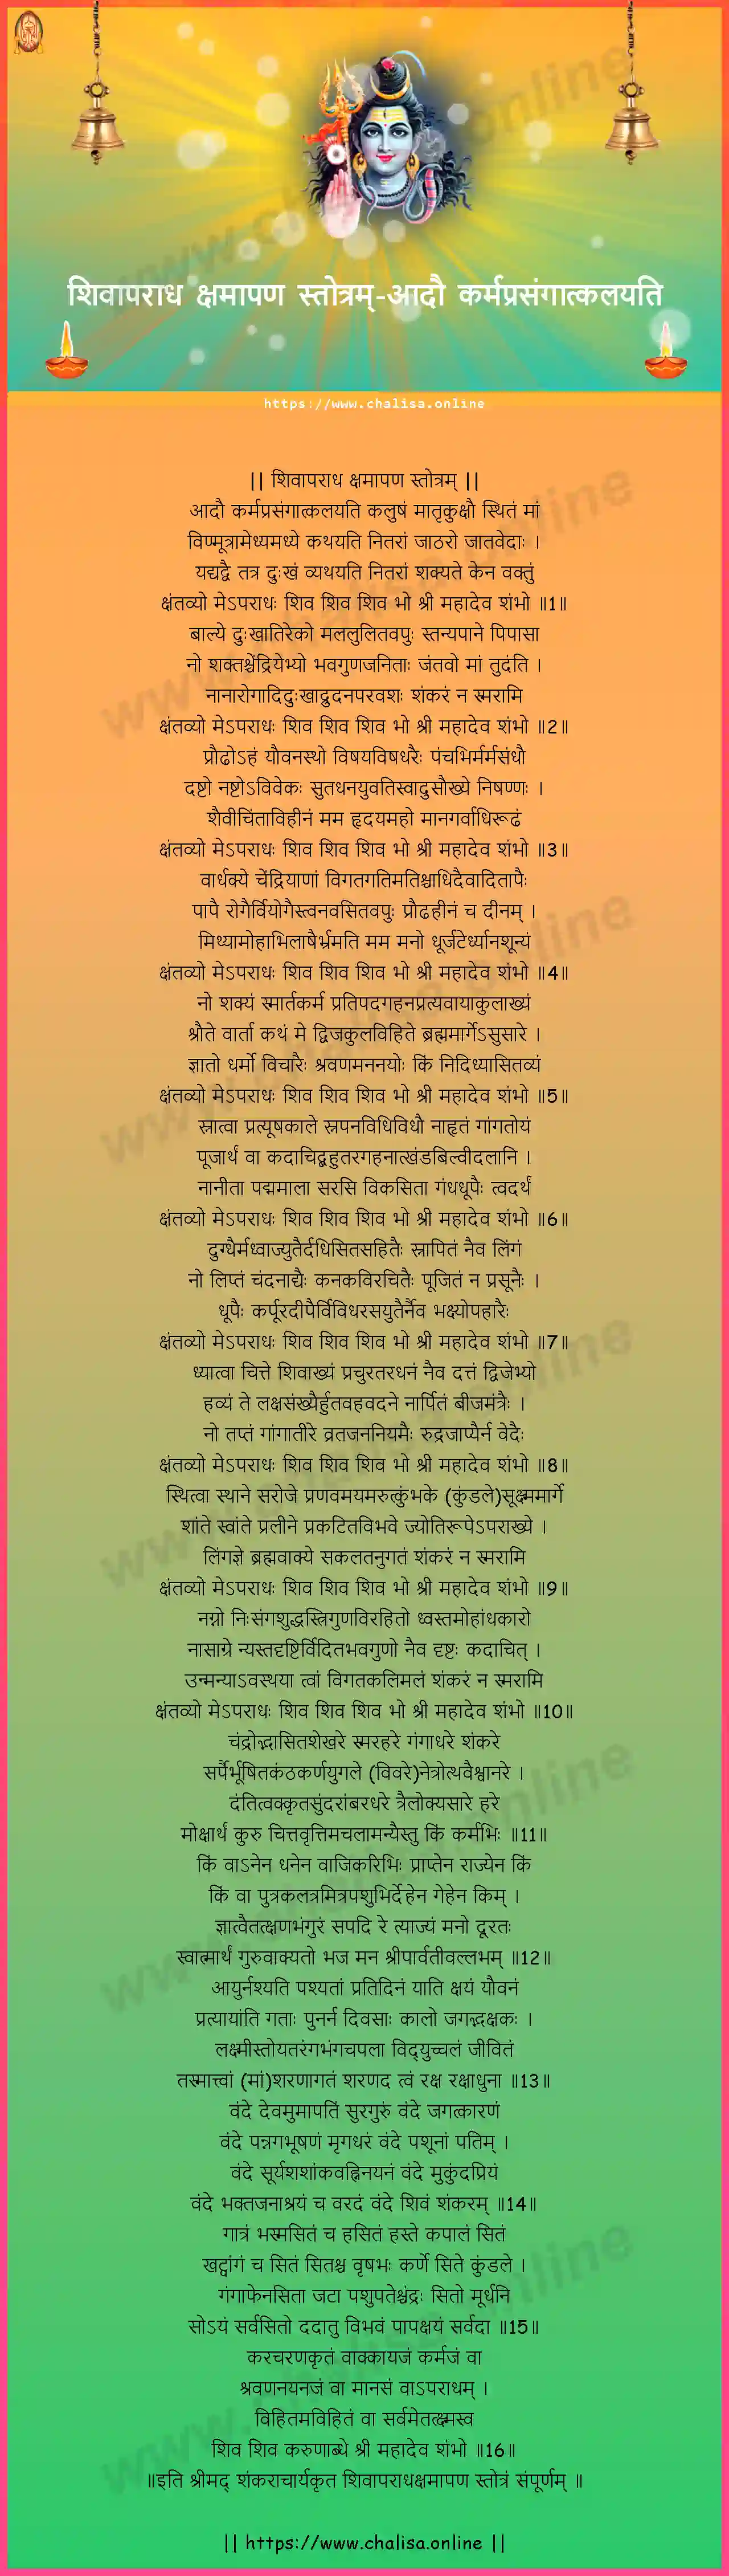 adau-karmaprasangatkalayati-shiva-aparadha-kshamapana-stotram-marathi-marathi-lyrics-download